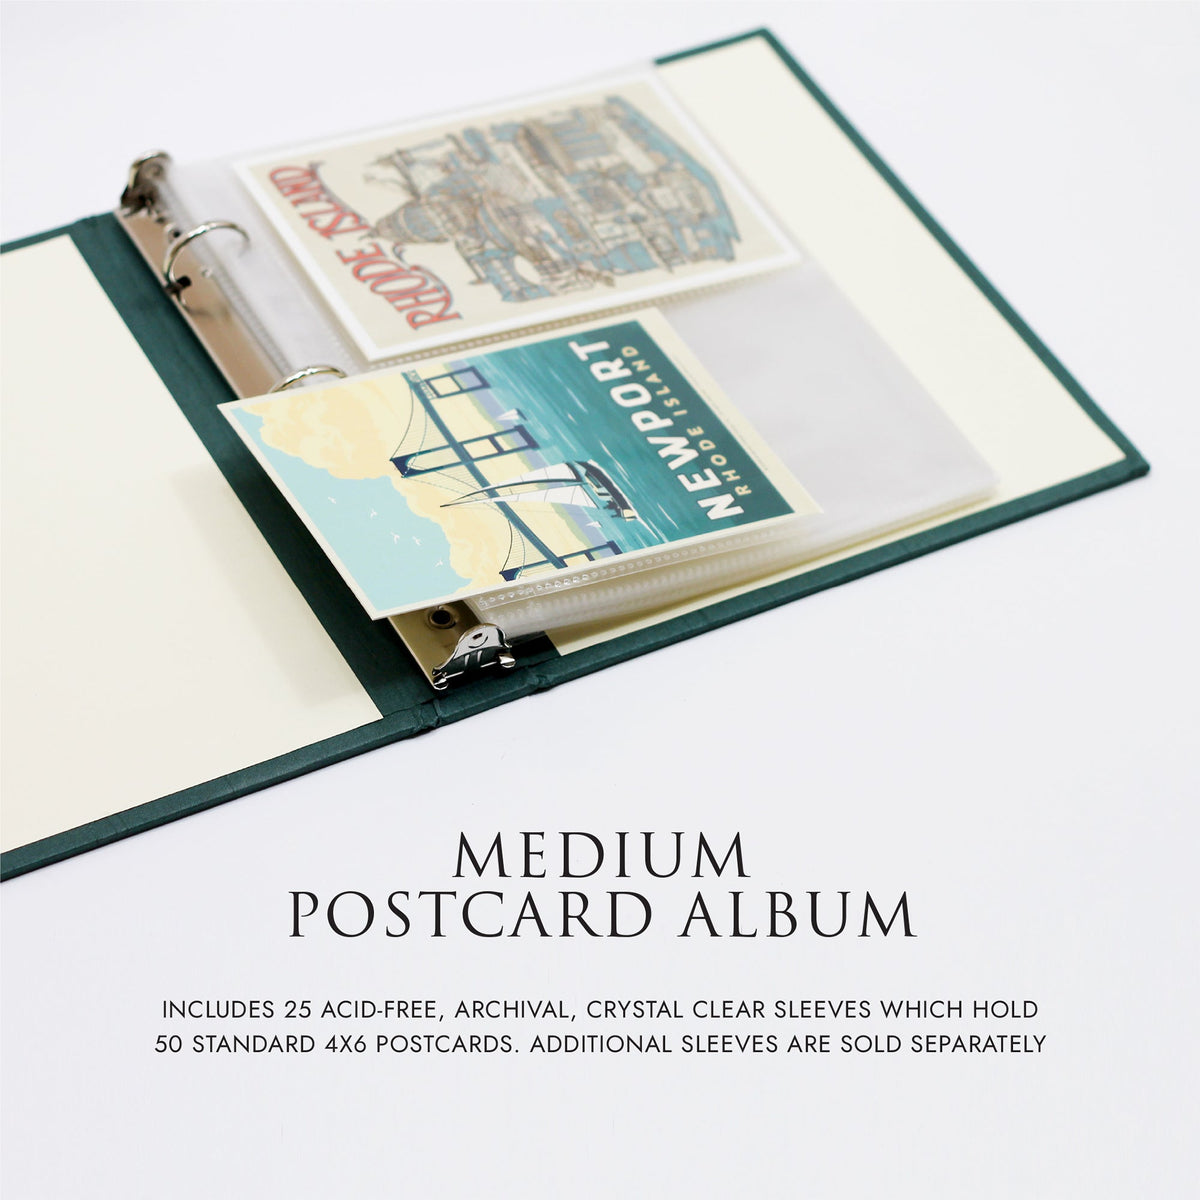 Medium Postcard Album with Terra Cotta Vegan Leather Cover | Fits 4x6 postcards